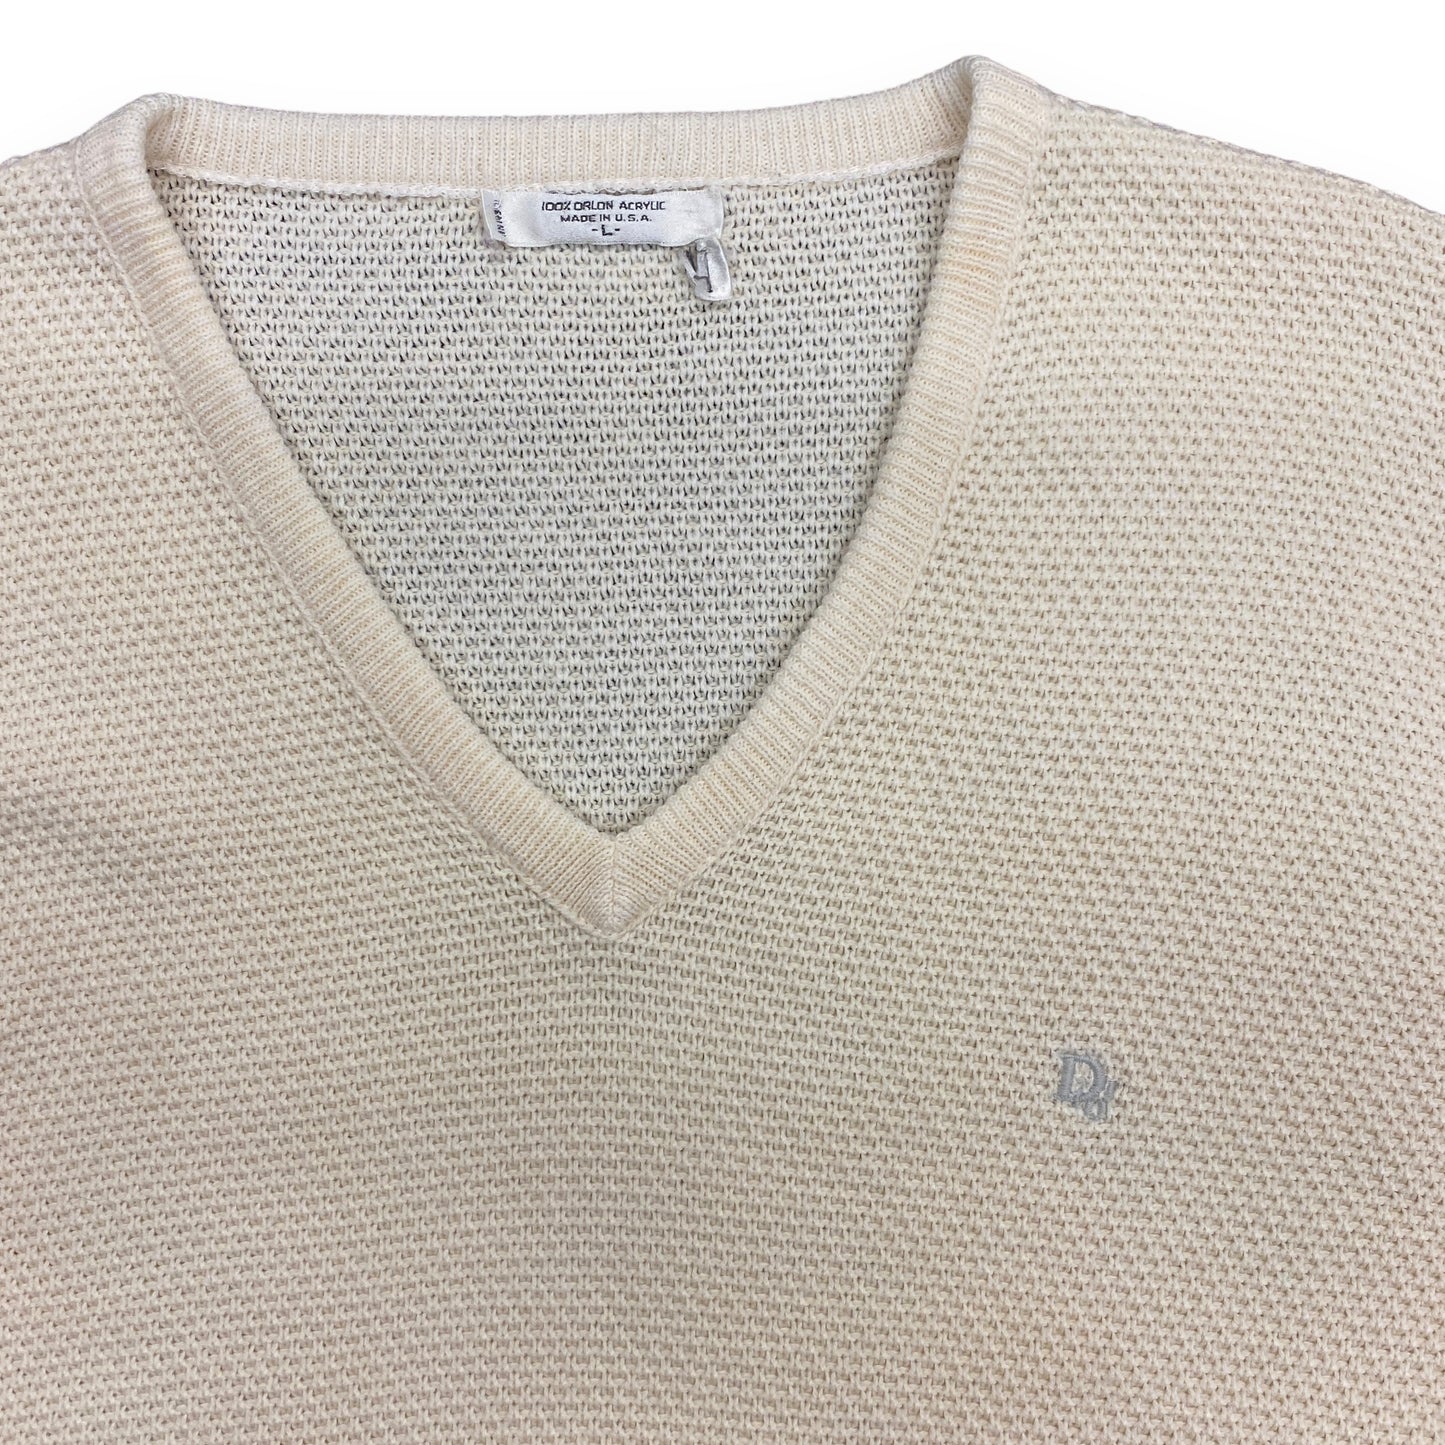 Vintage Christian Dior Cream V-Neck Sweater - Size Large